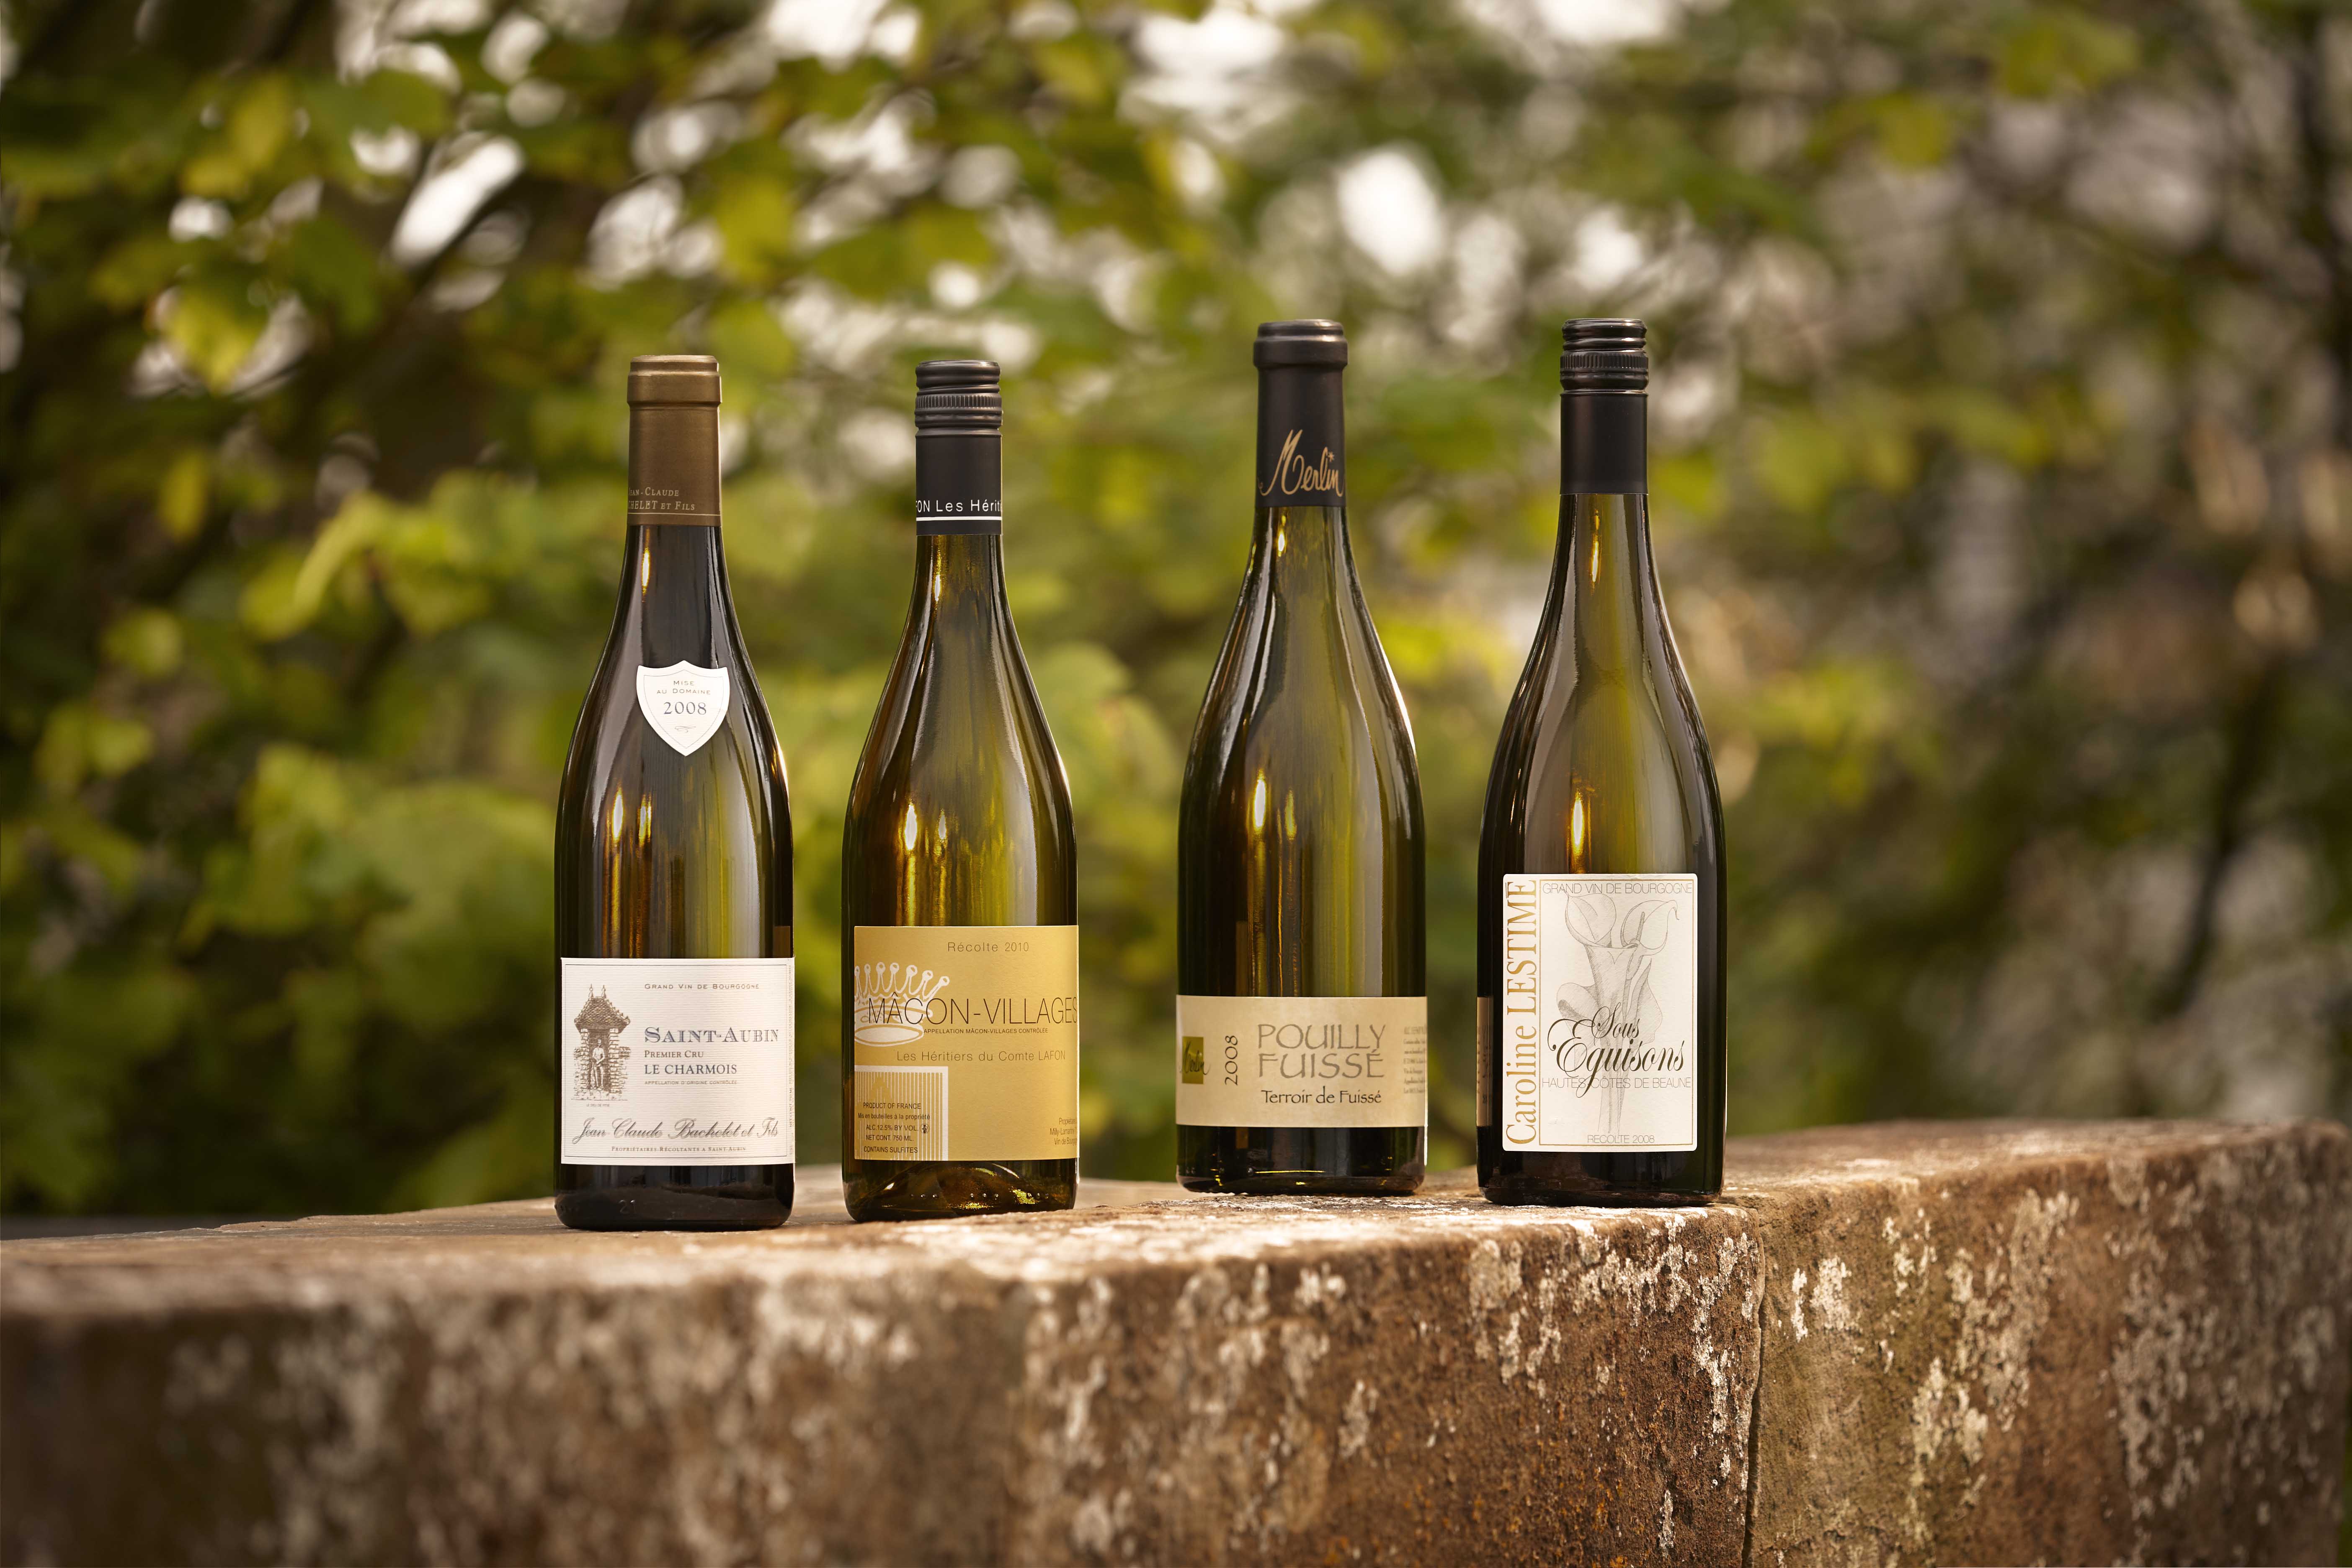 Meursault - Exquise appellation de vins blancs de Bourgogne